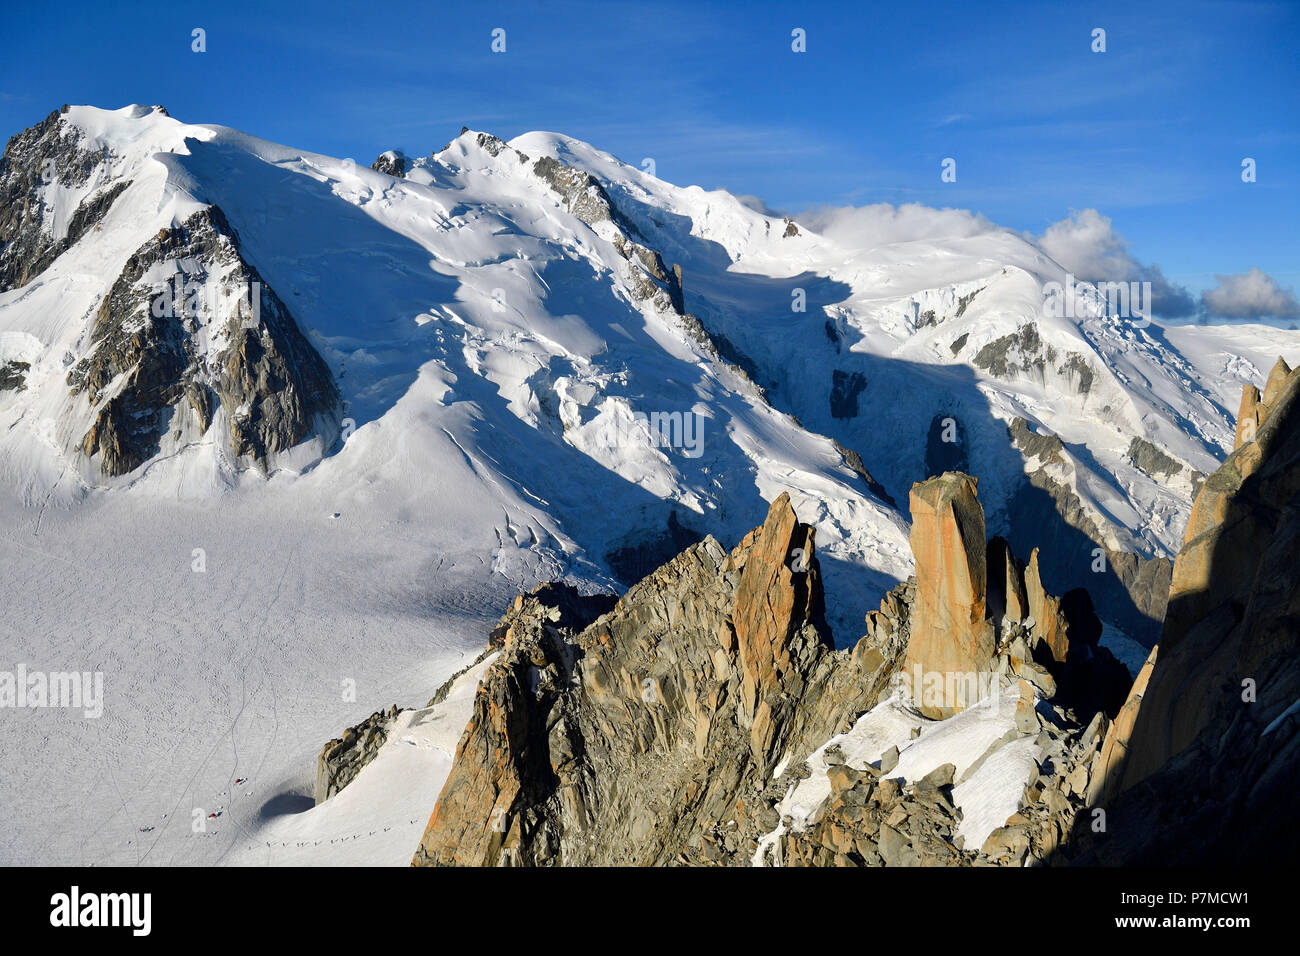 France, Haute Savoie, Chamonix Mont Blanc, Mont Blanc (4810m) Stock Photo